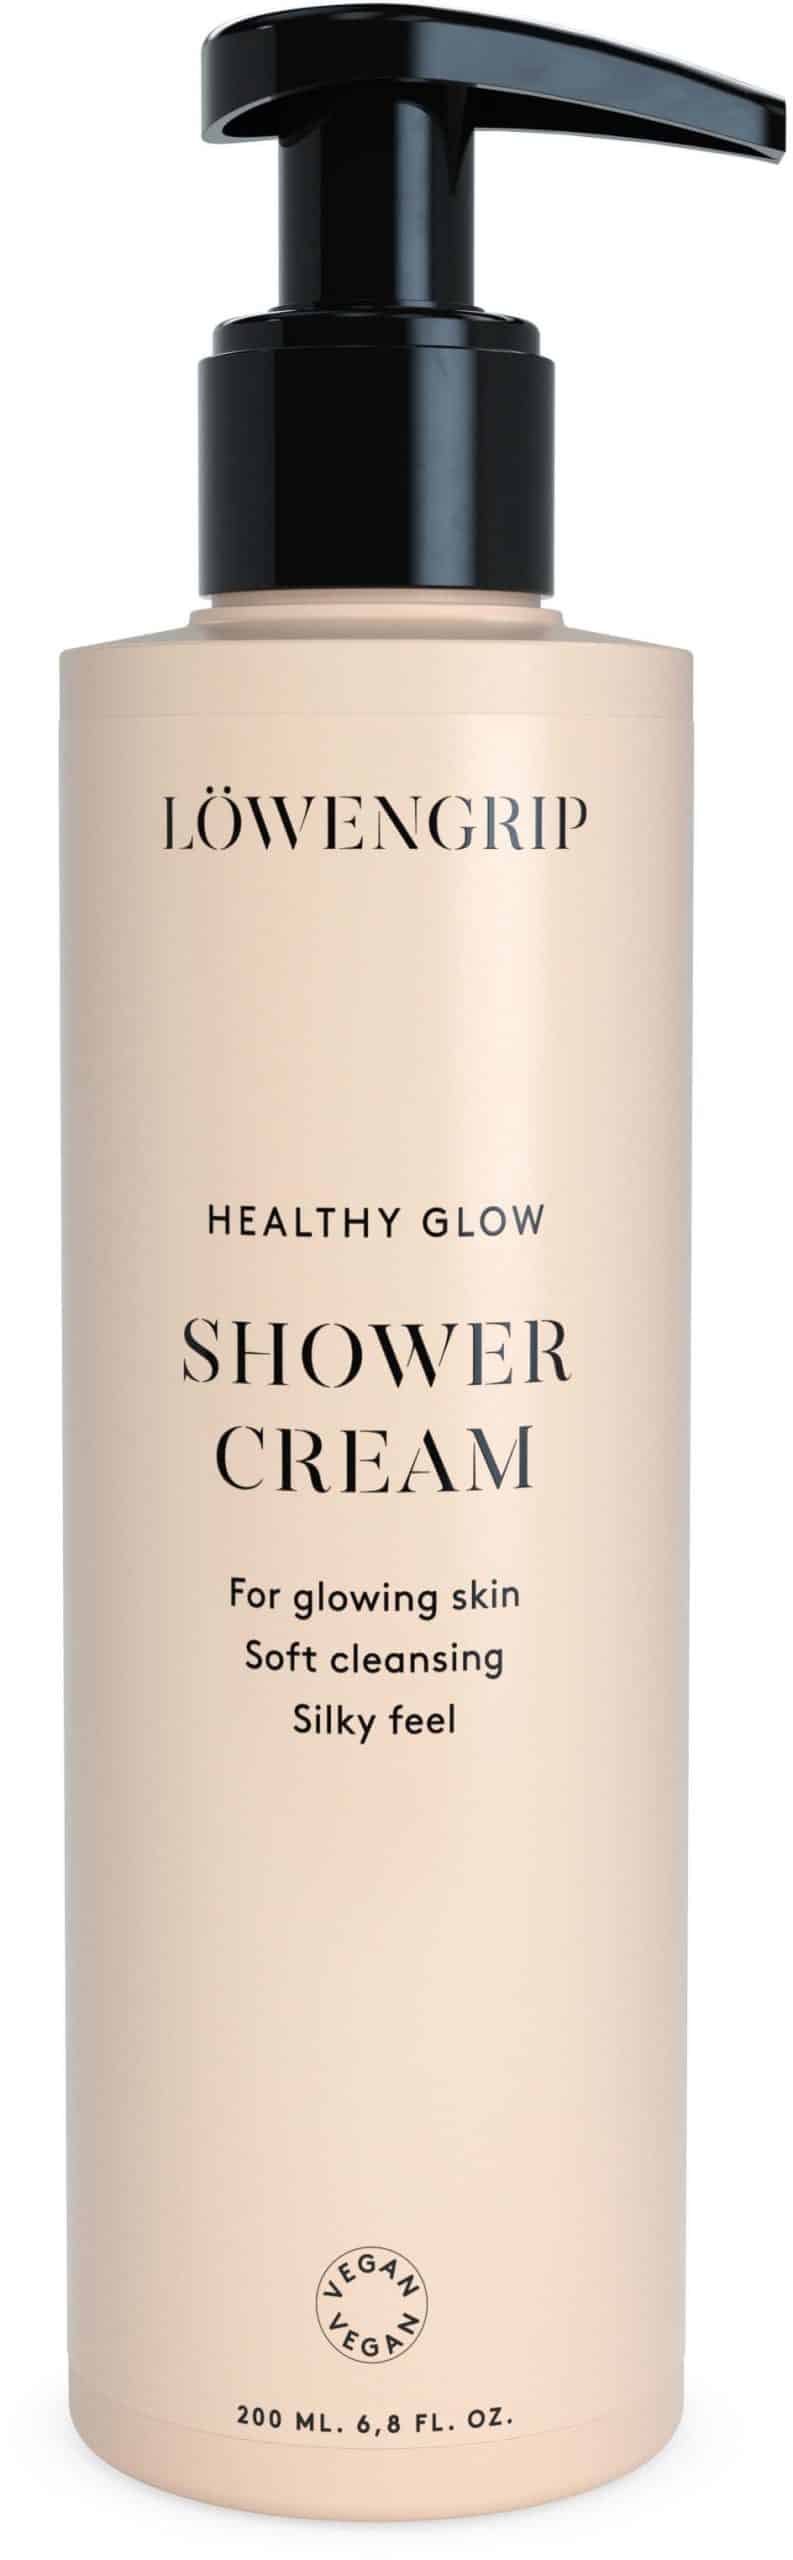 Löwengrip Healthy Glow Shower Cream (200 ml)